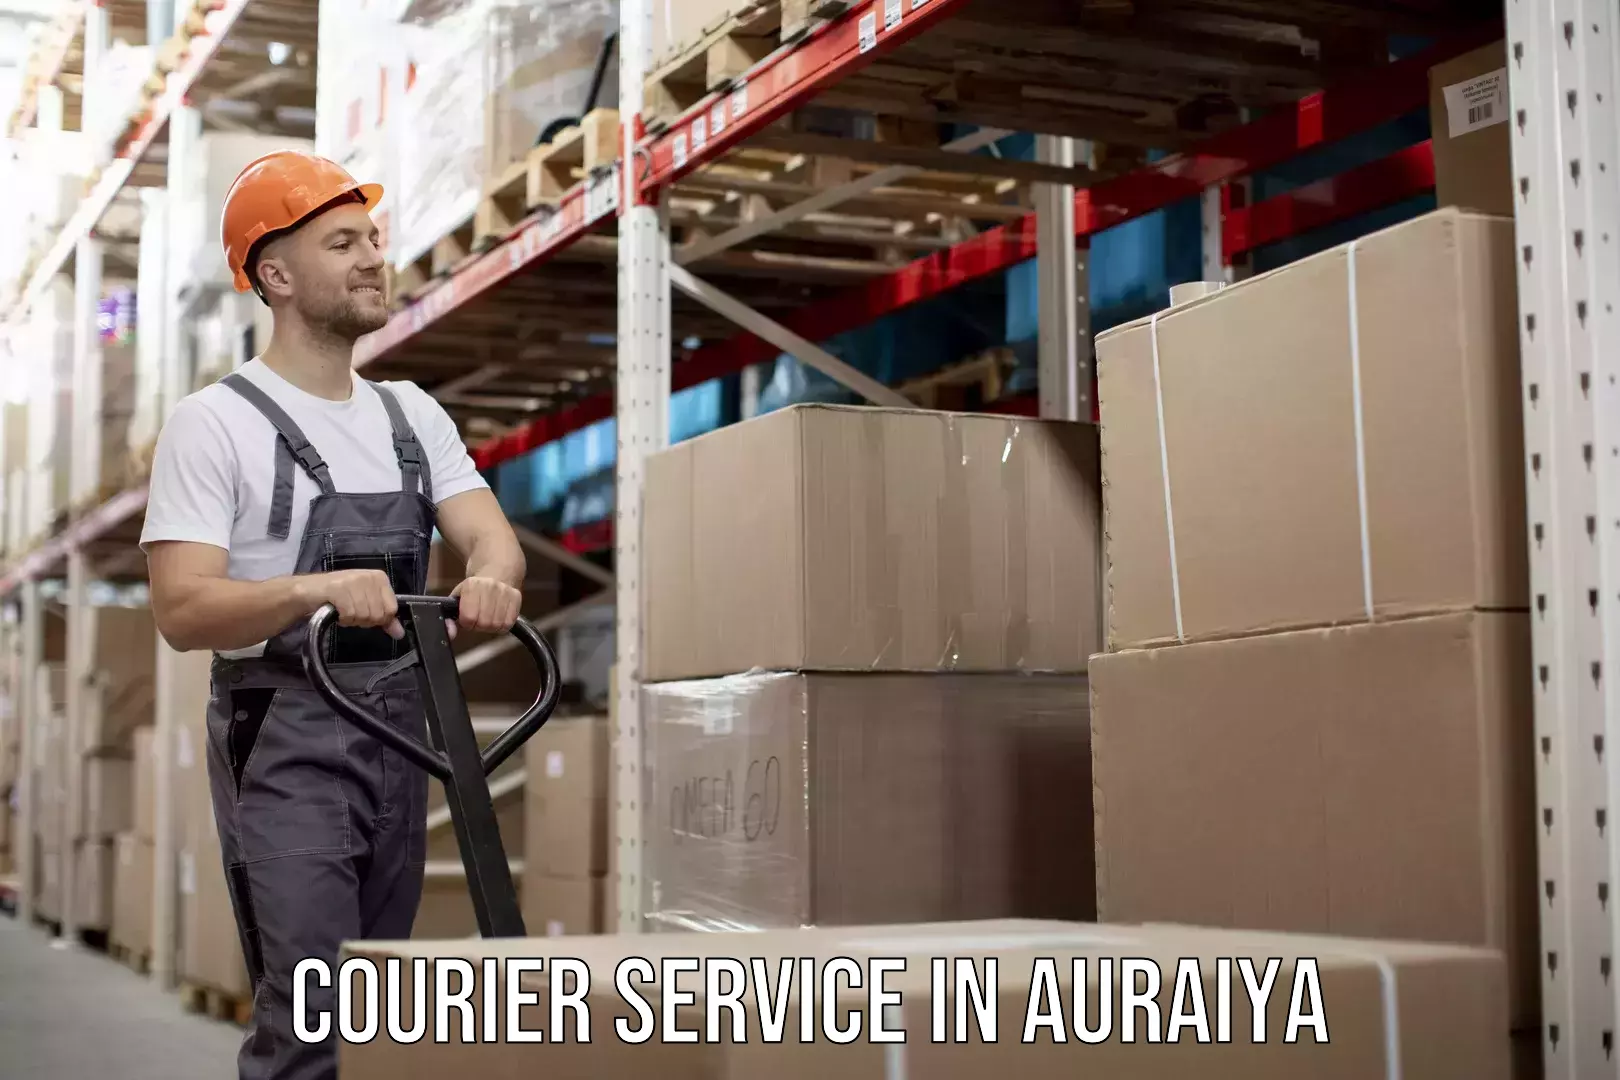 Advanced parcel tracking in Auraiya